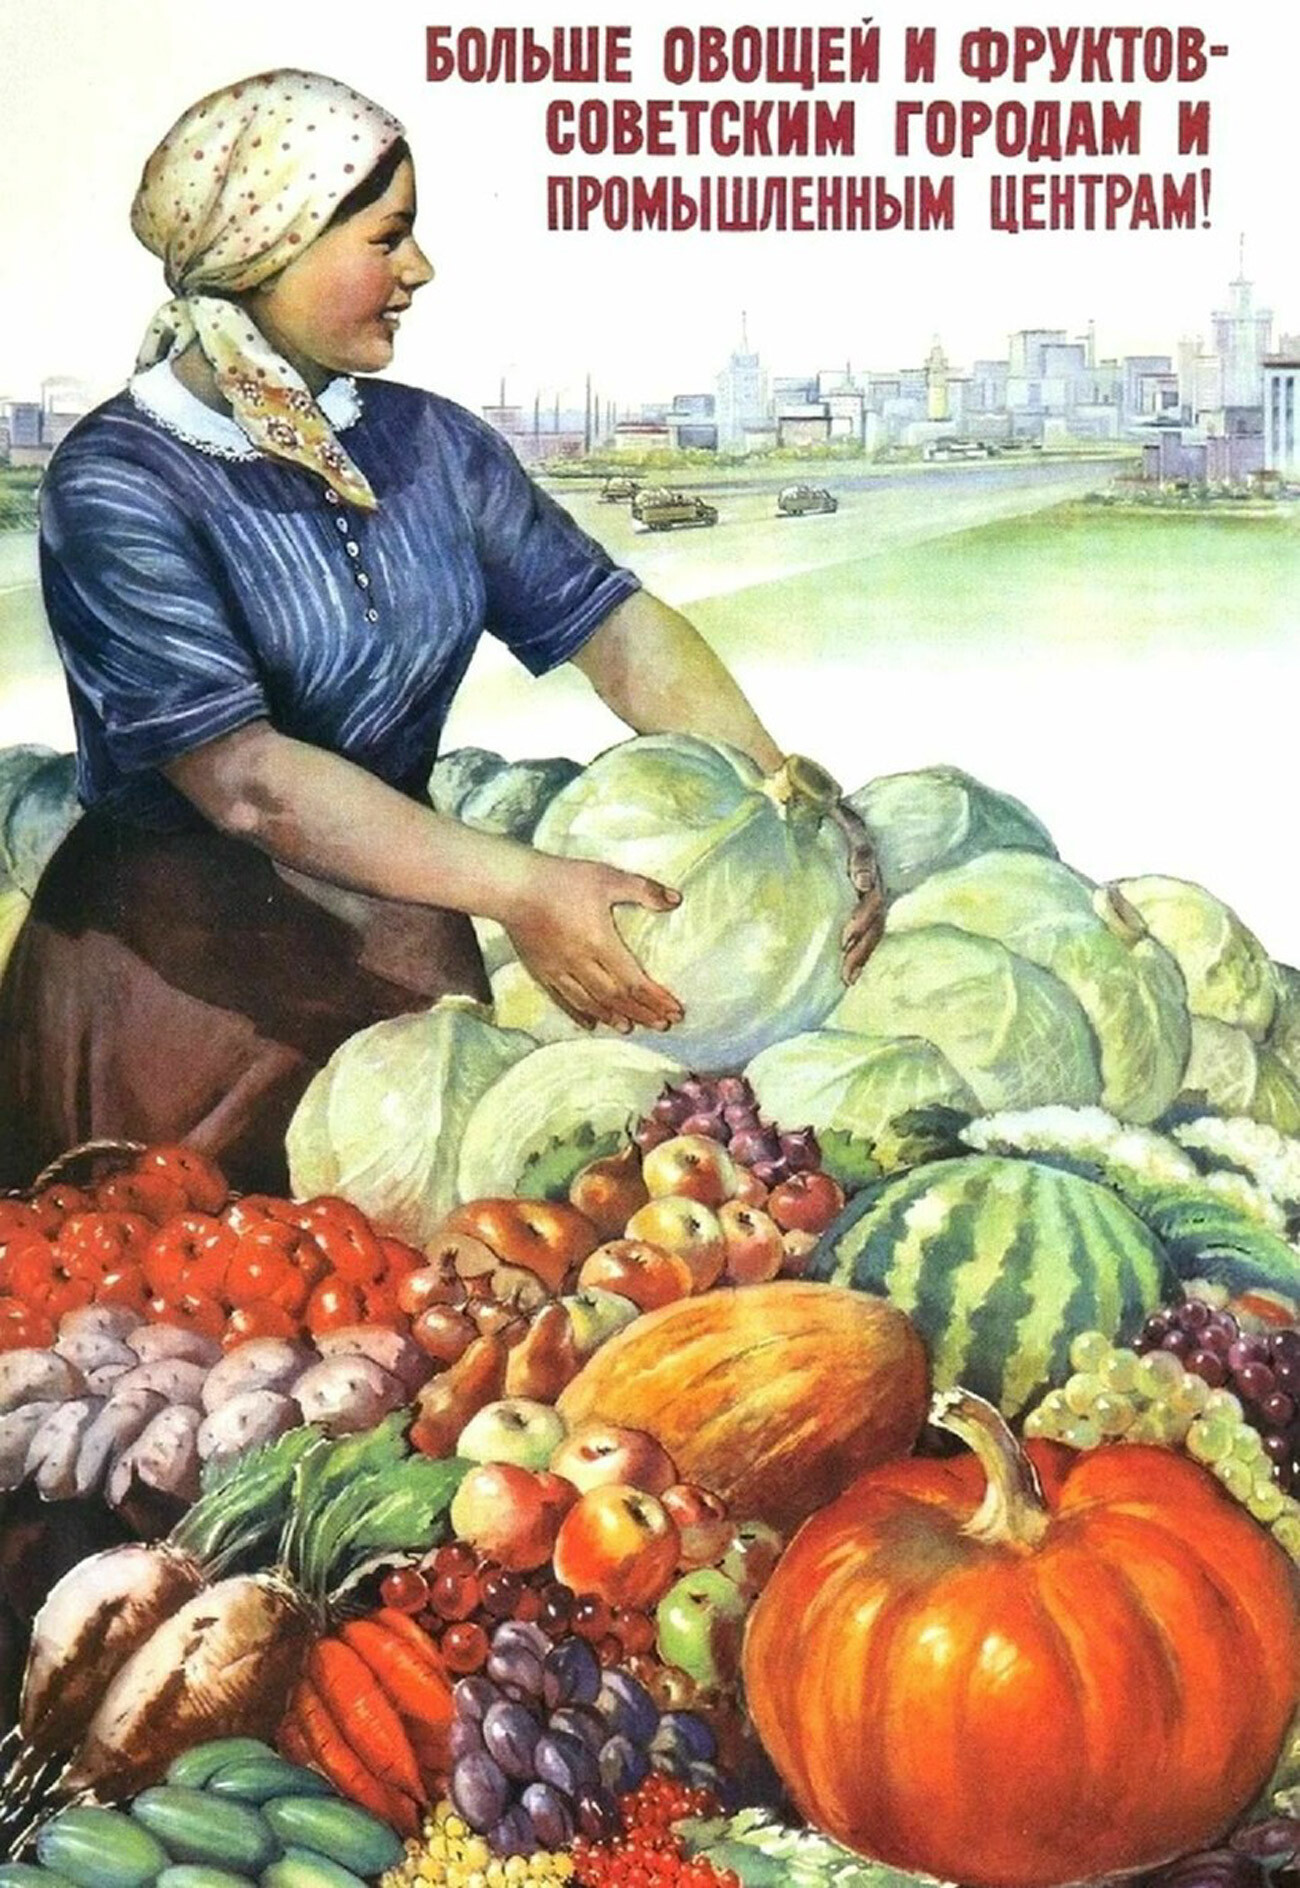 Plus de légumes et de fruits pour les villes et centres industriels soviétiques !